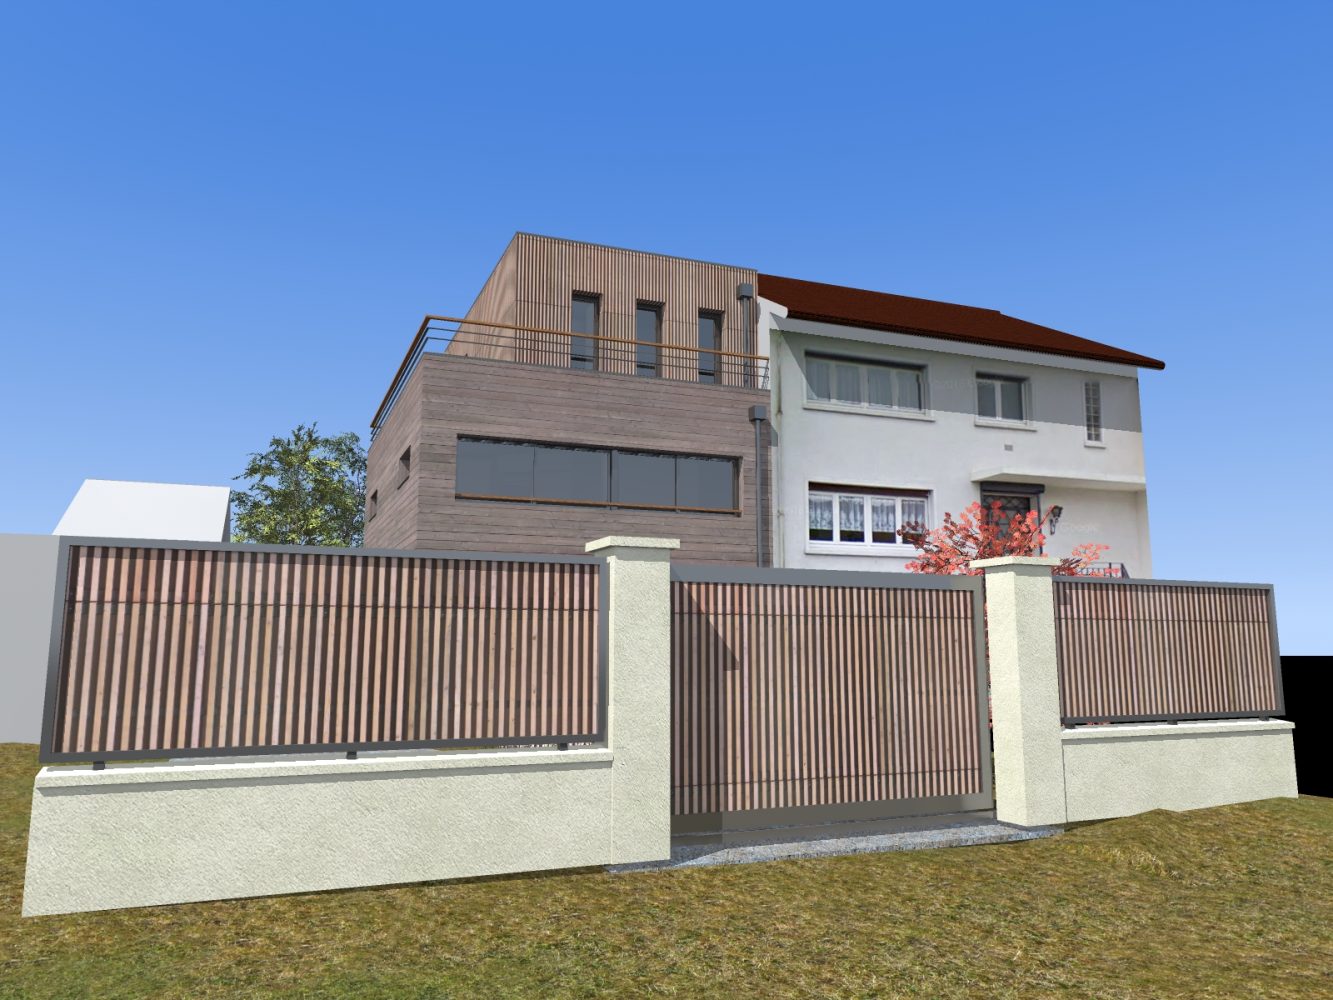 Philippe_Zerbib_Architecte_construction_maisons_ossature_bois_projet_maison-Vollaire-View 0_5#1